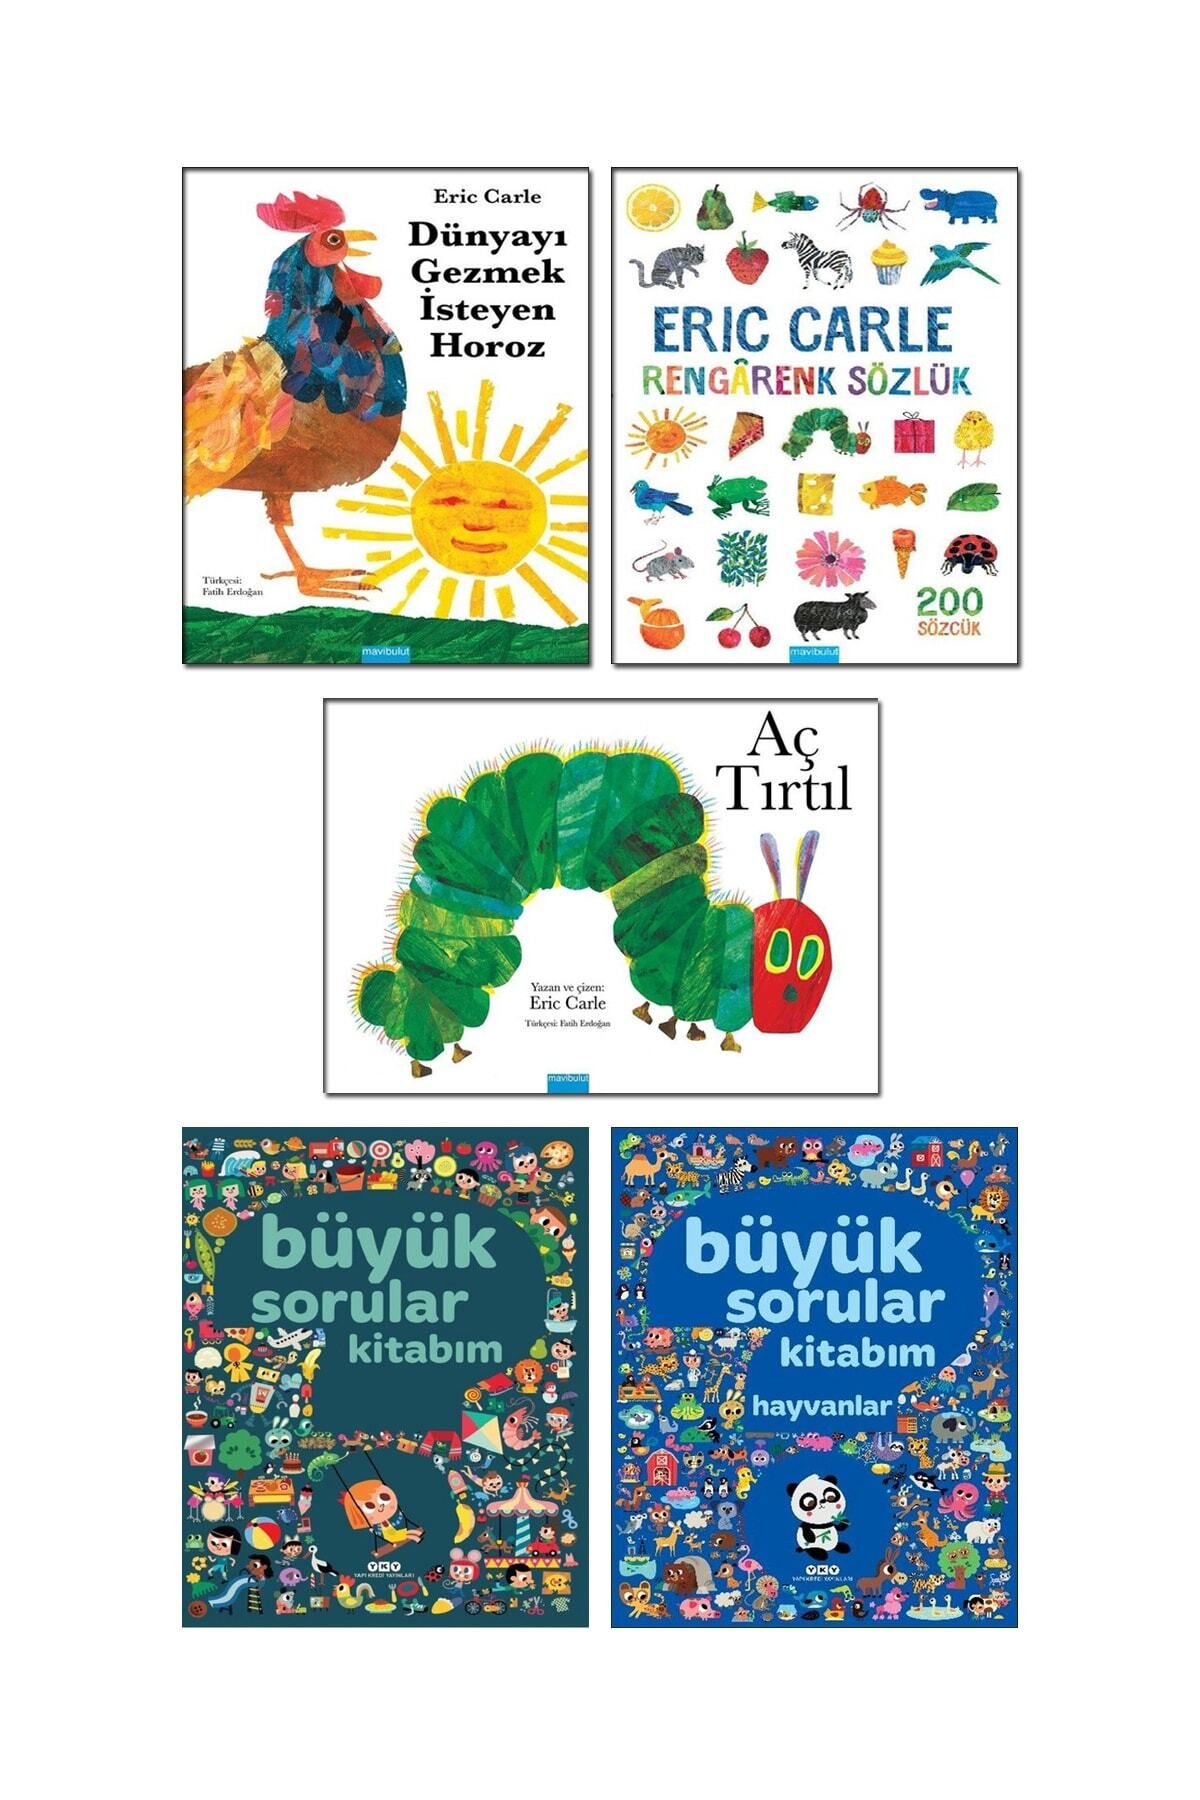 Yapı Kredi Yayınları Büyük Sorular Kitabım Hayvanlar Aç Tırtıl Rengarenk Sözlük Dünyayı Gezmek Isteyen Horoz Eric Carle